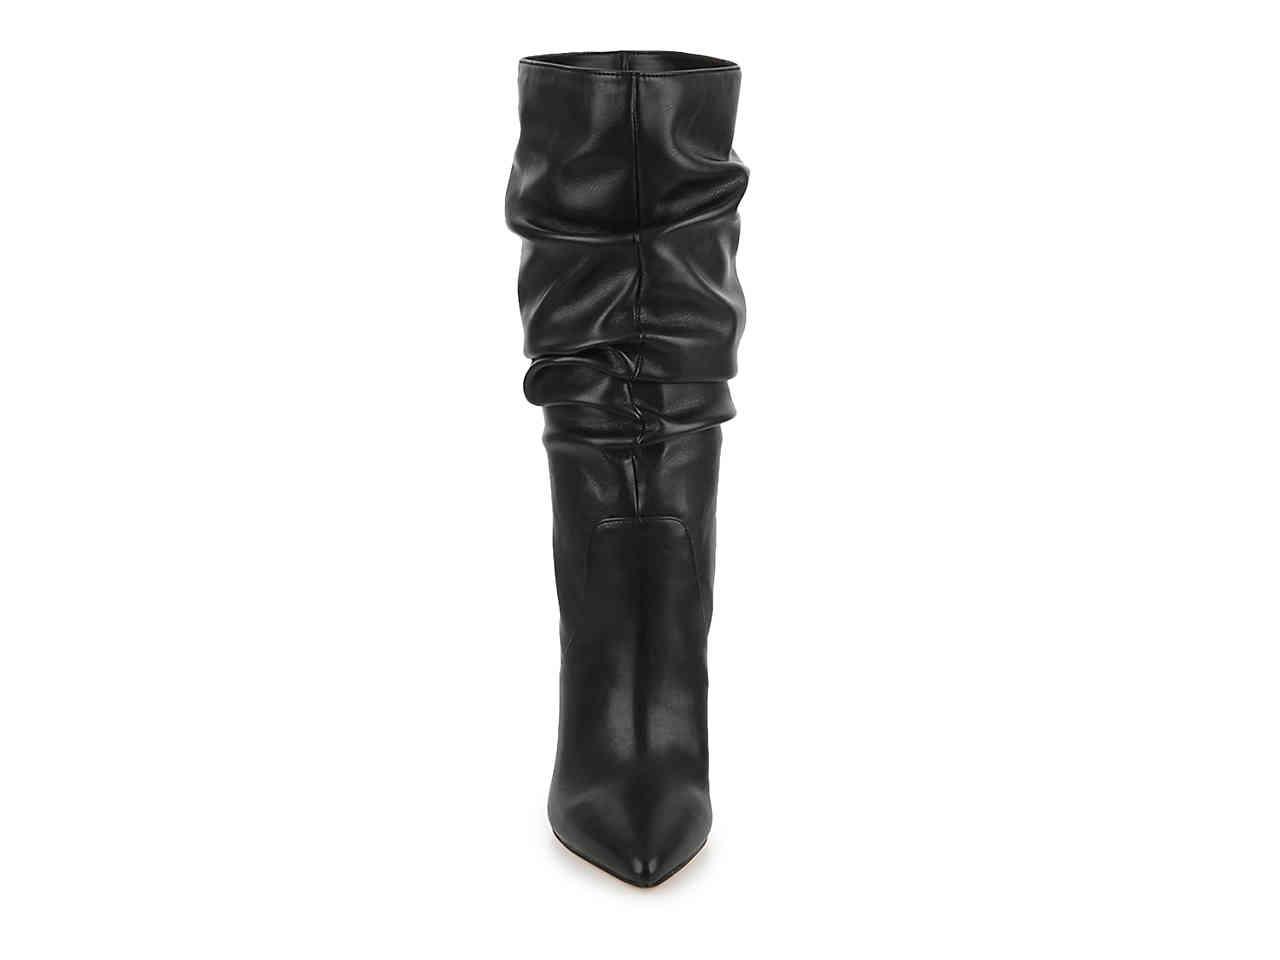 Jessica Simpson Saffrina Boot in Black - Lyst